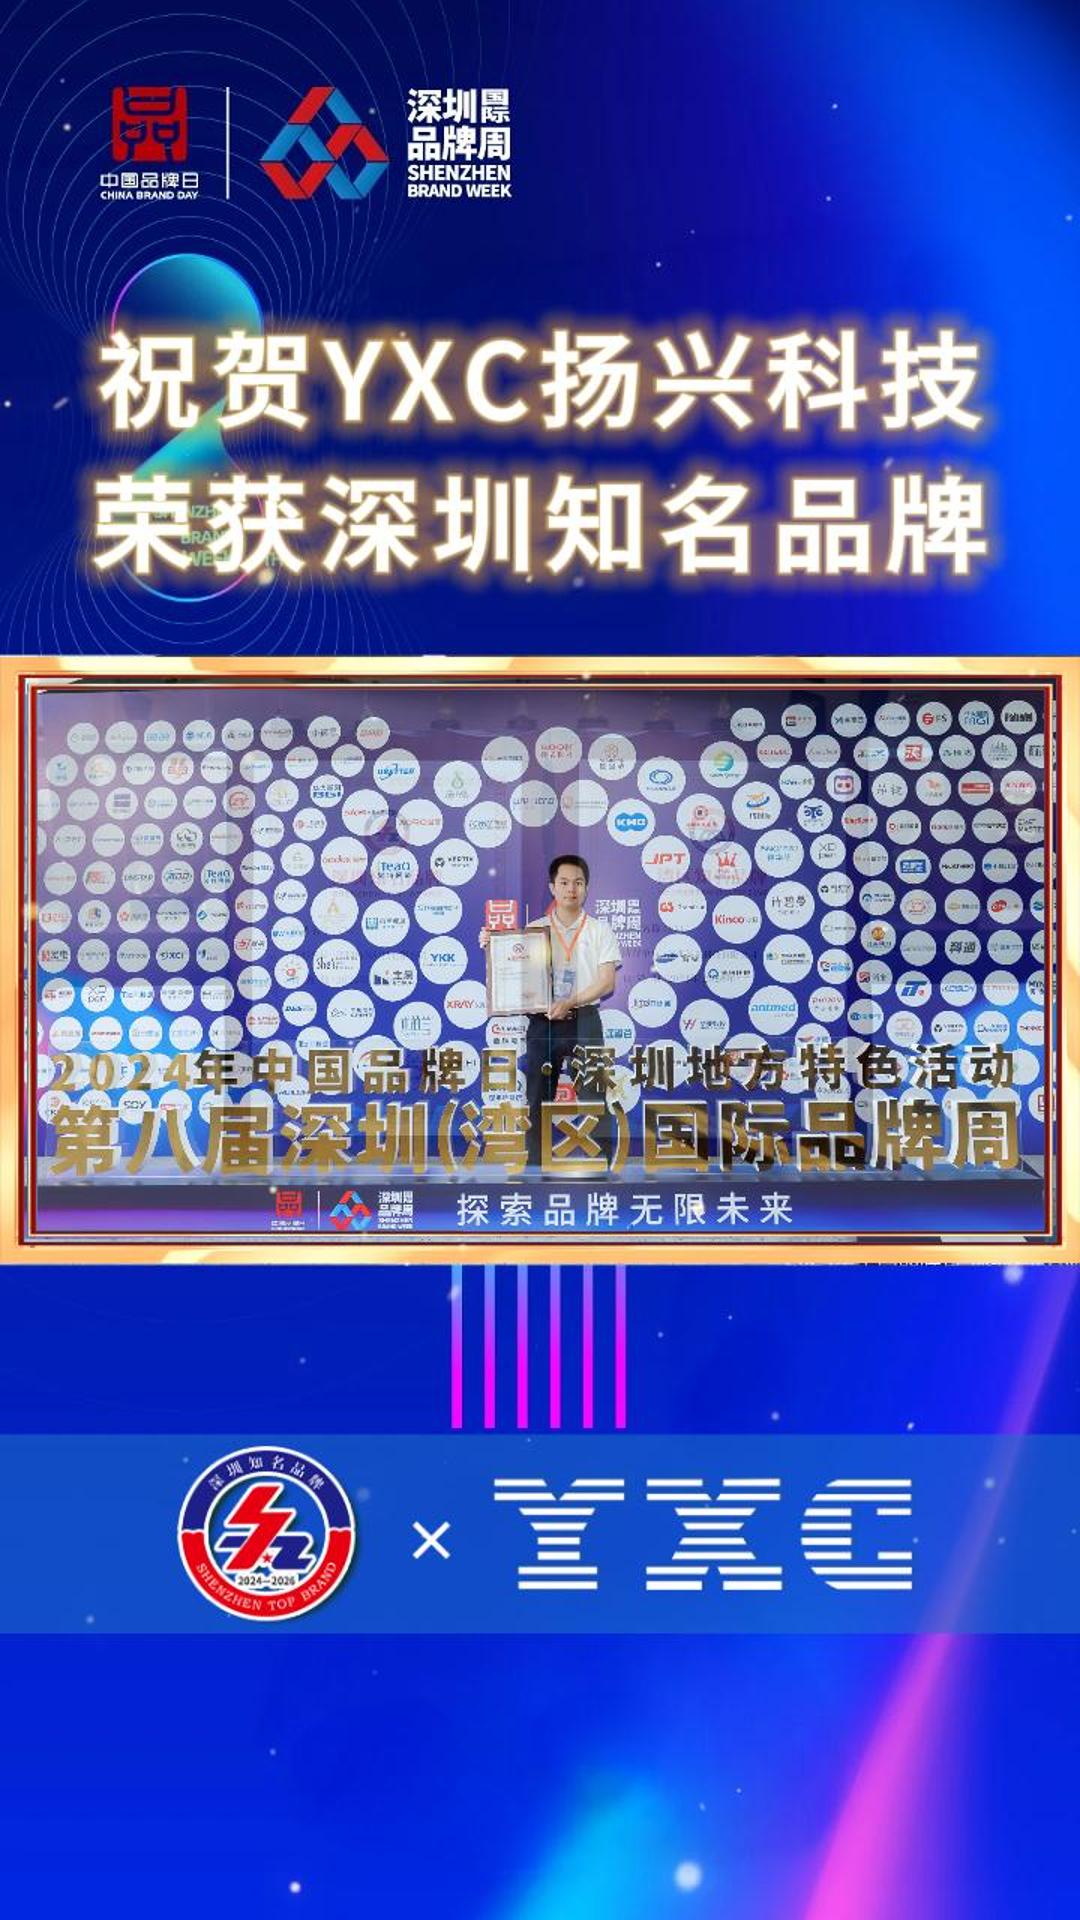  祝贺YXC扬兴科技，荣获“深圳知名品牌”及“湾区知名品牌”称号！